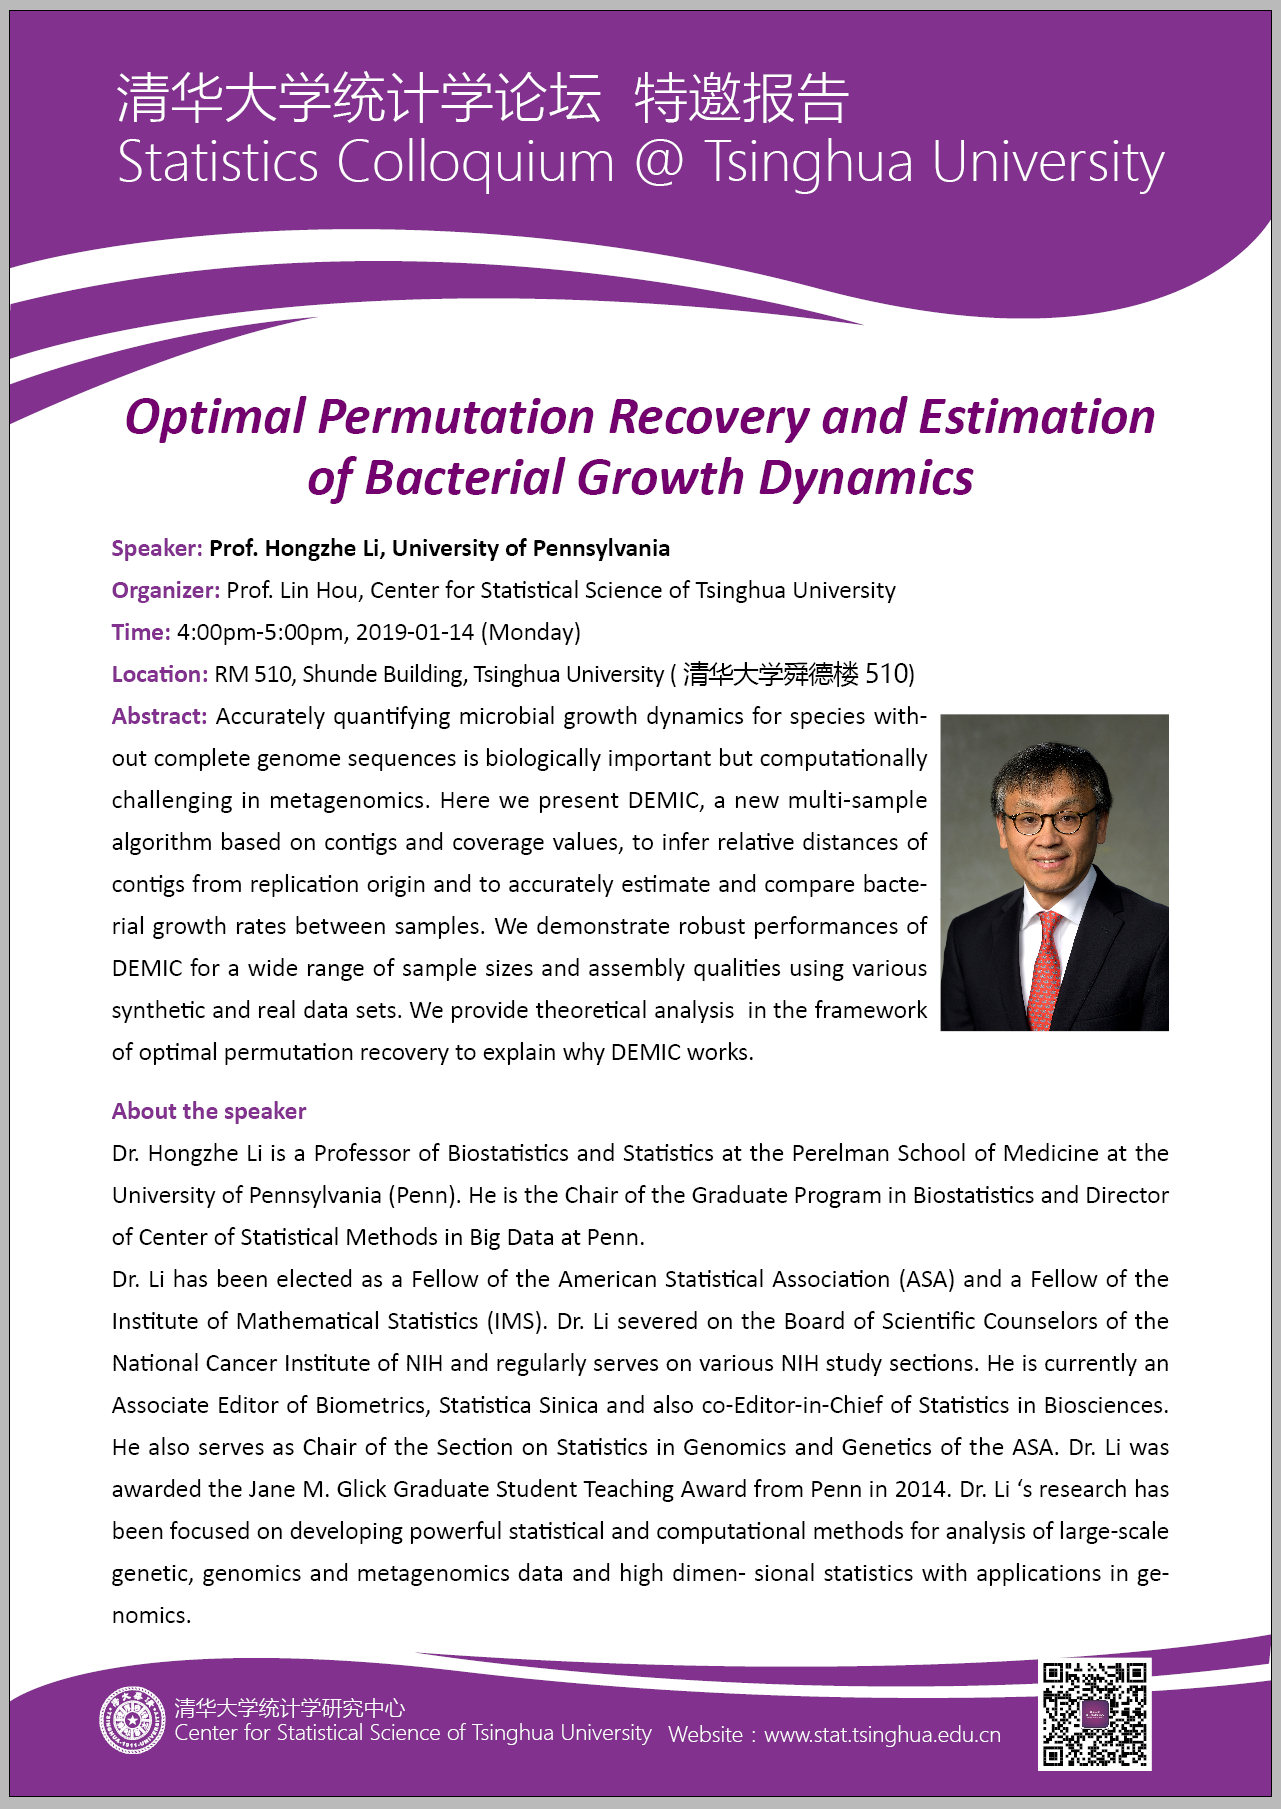 【统计学论坛】Optimal Permutation Recovery and Estimation of Bacterial Growth Dynamics